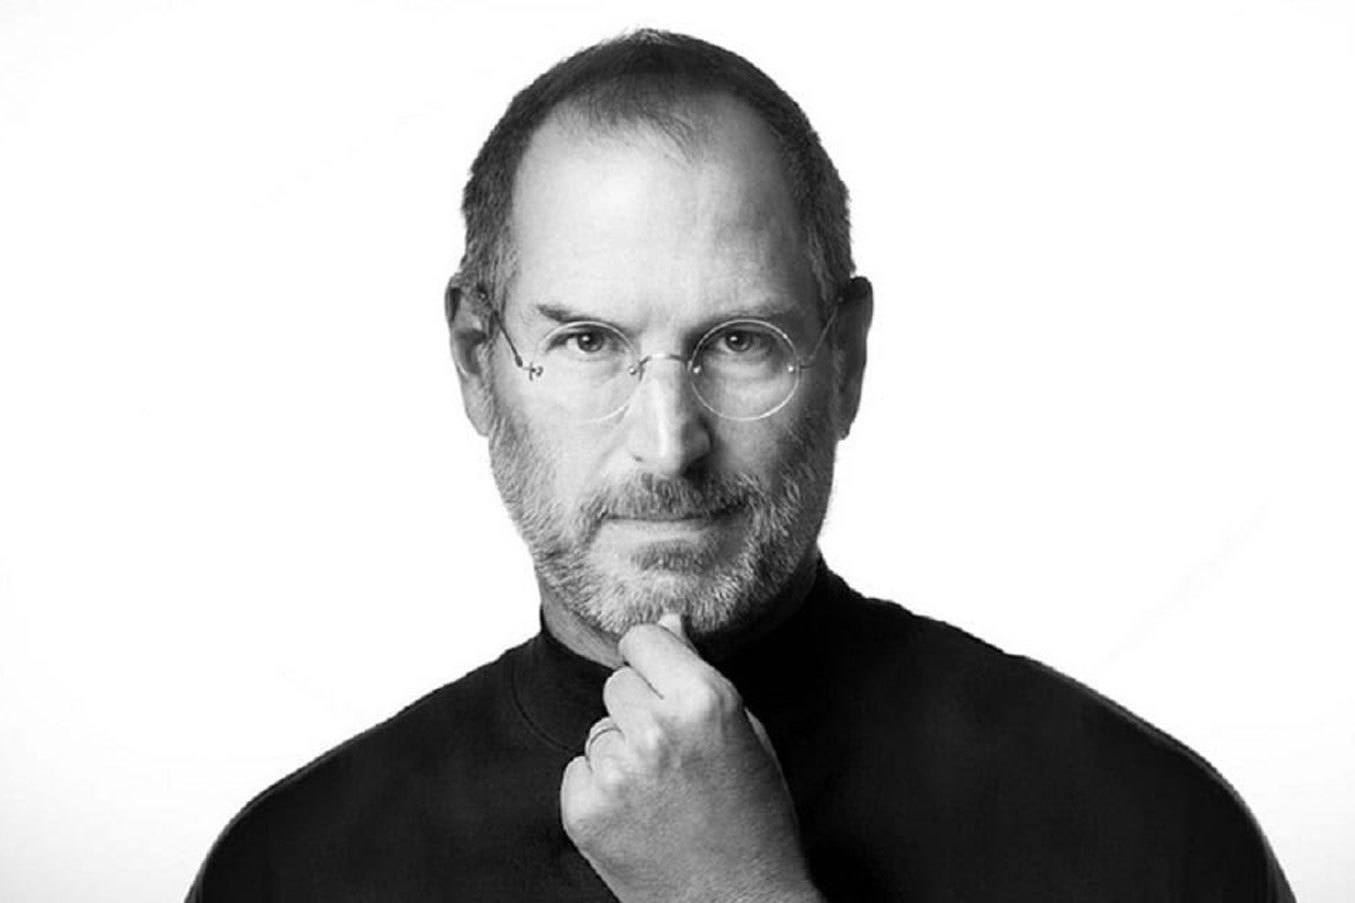 Steve Jobs (February 24, 1955 – October 5, 2011)